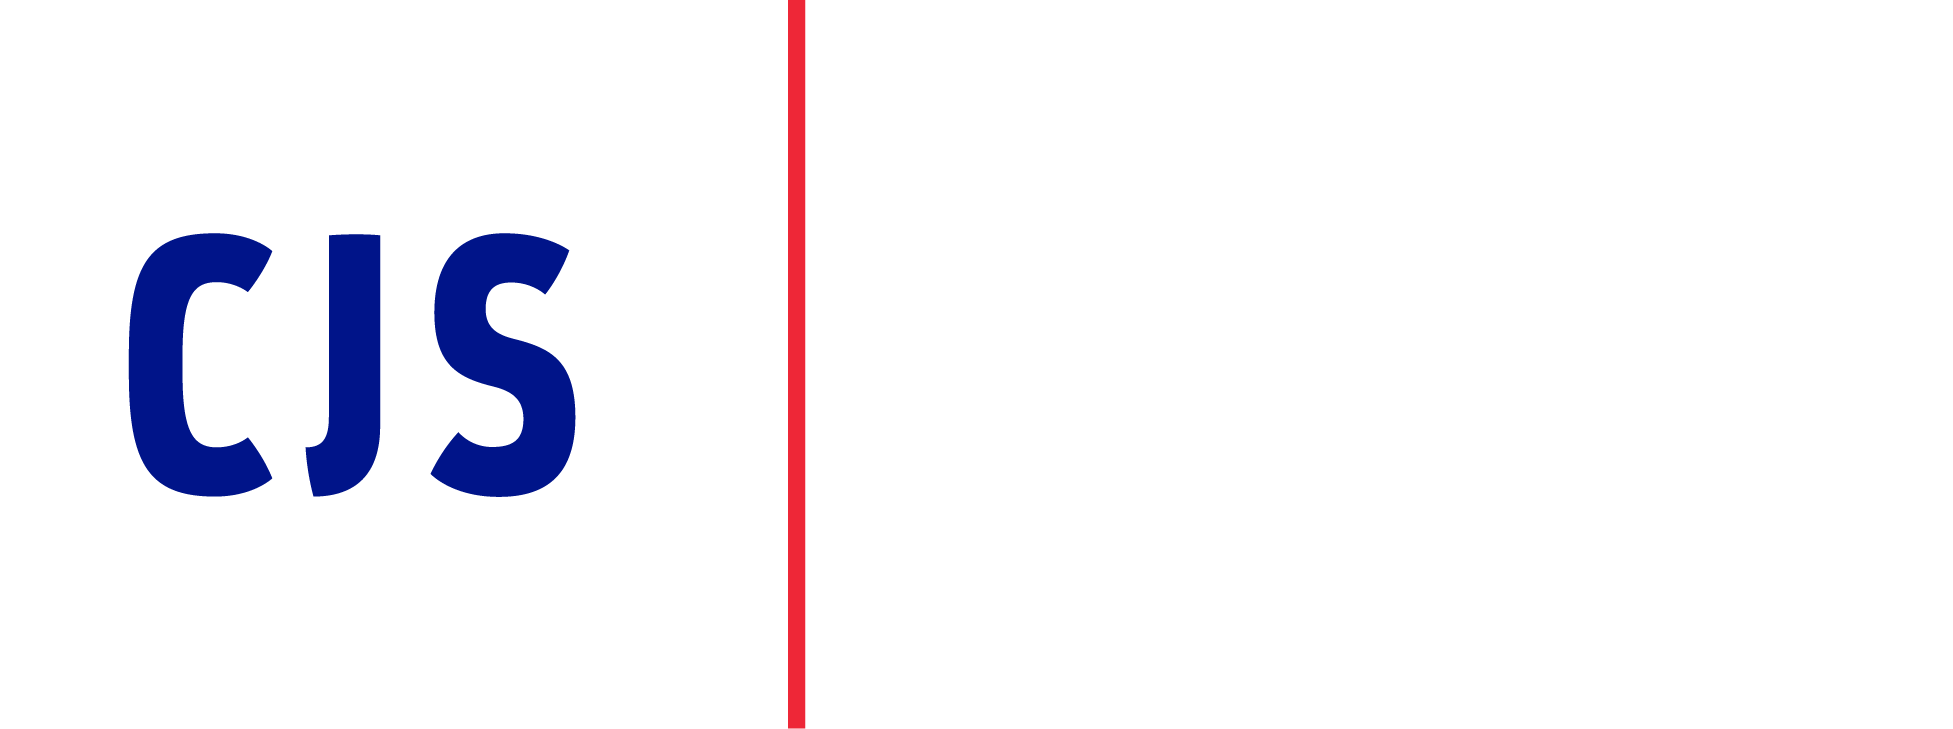 CJS | Risk Management